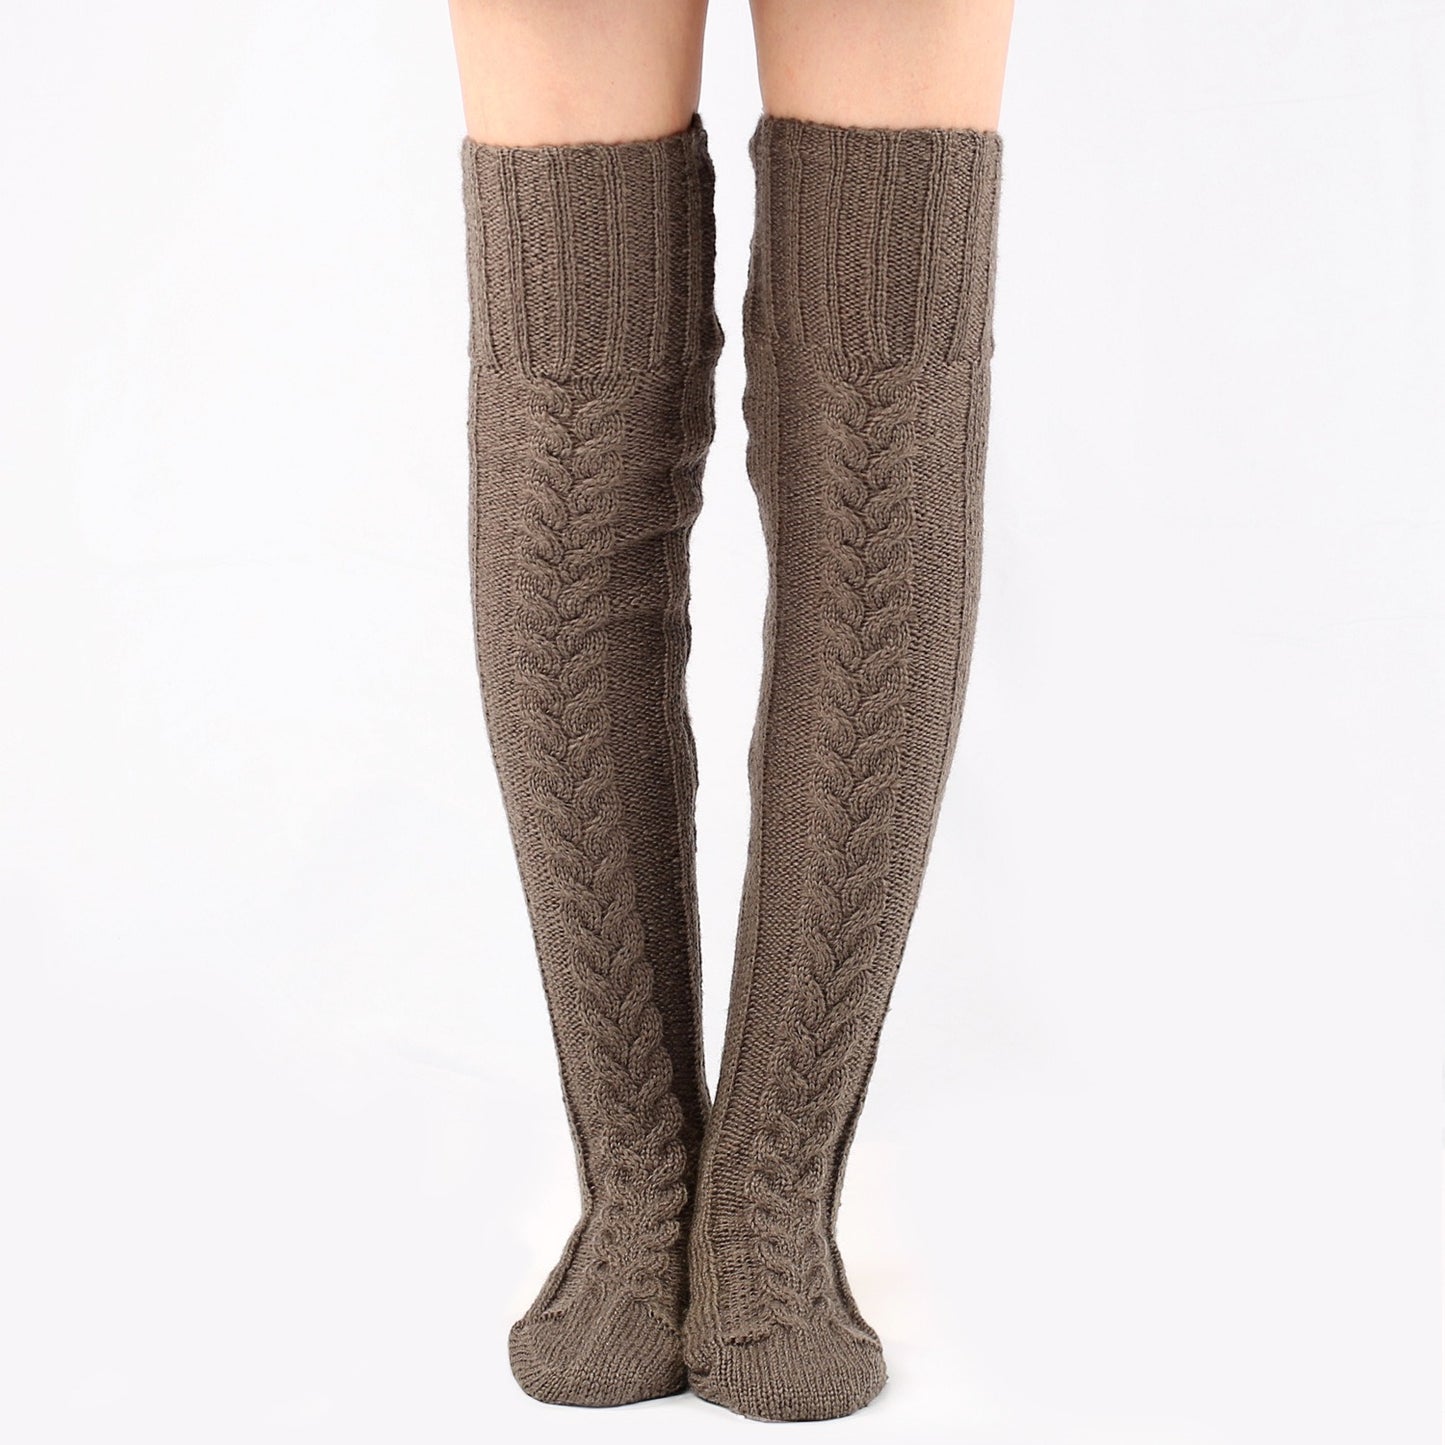 Knitting Knee Length Stockings